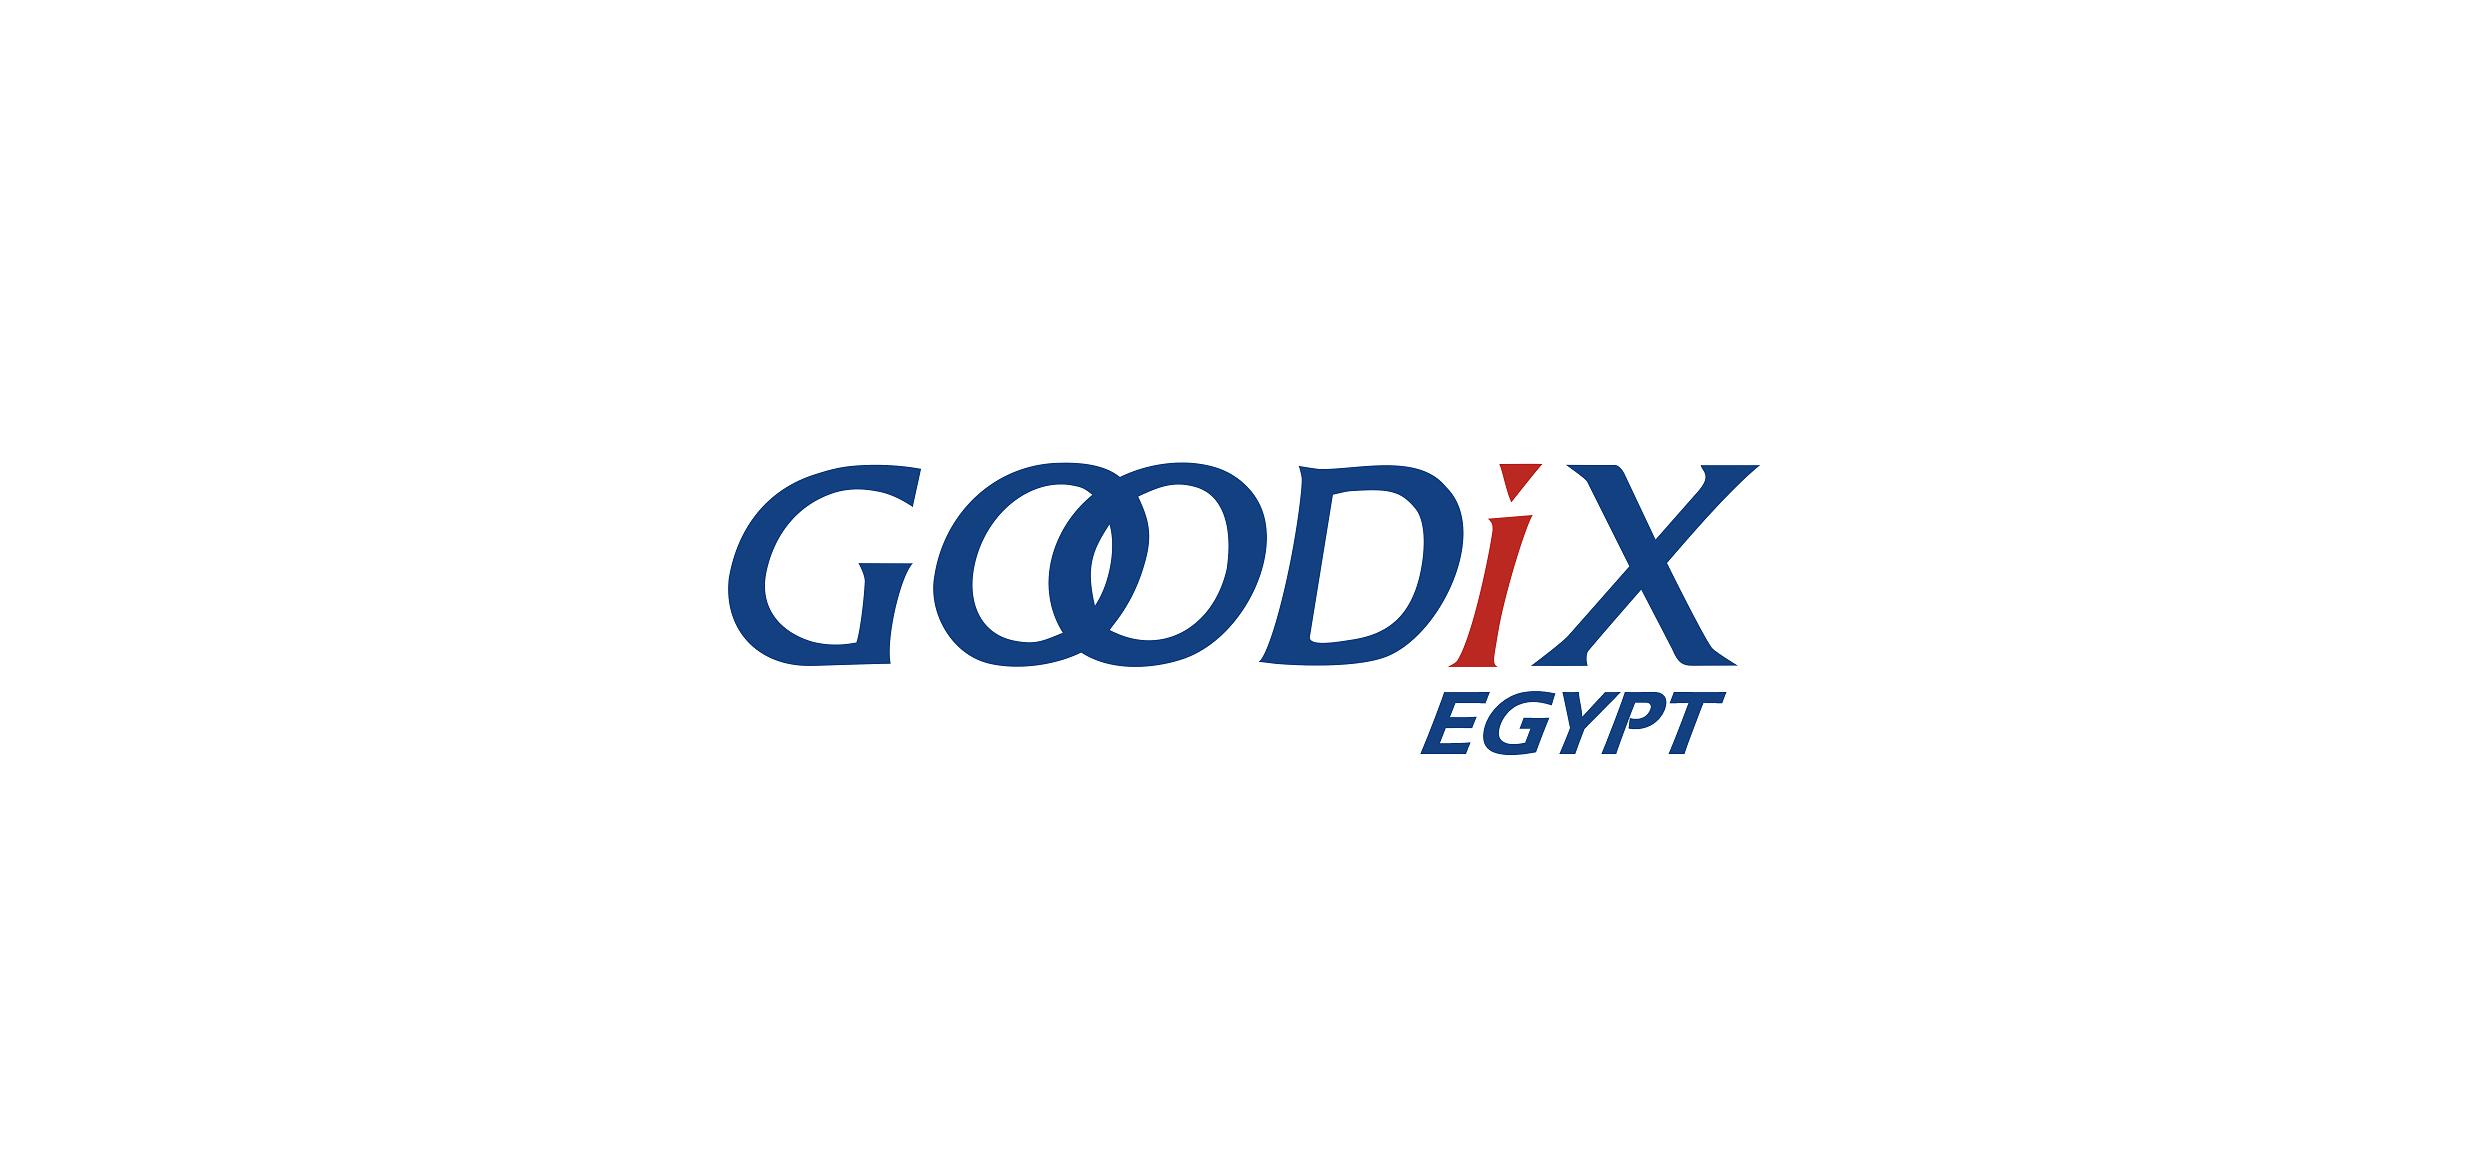 Goodix Egypt